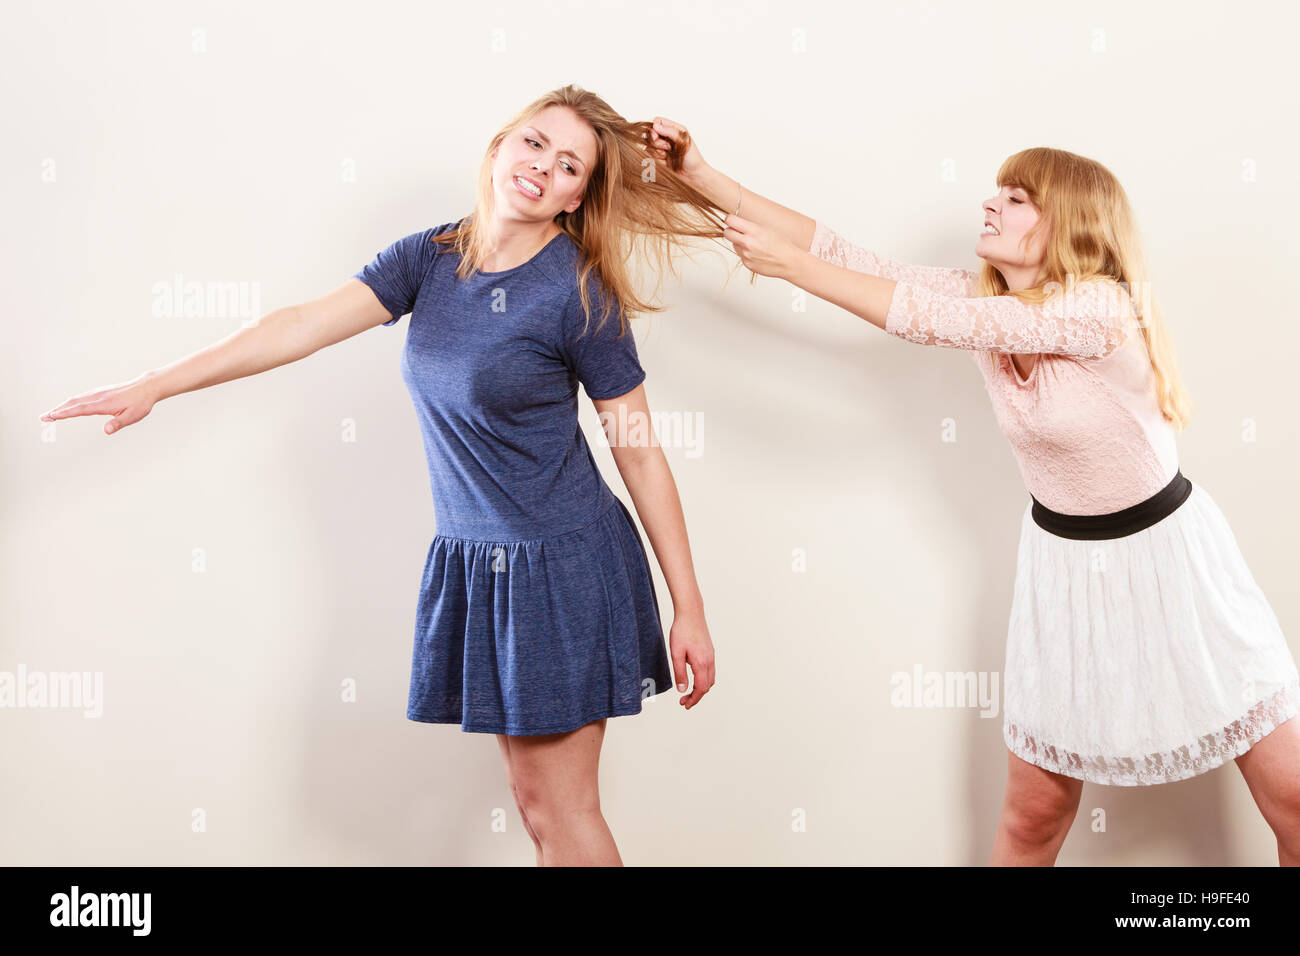 Aggressive verrückte Frauen gegeneinander kämpfen Haar ziehen. Zwei junge  Mädchen kämpfen gewinnen Catfight. Gewalt Stockfotografie - Alamy